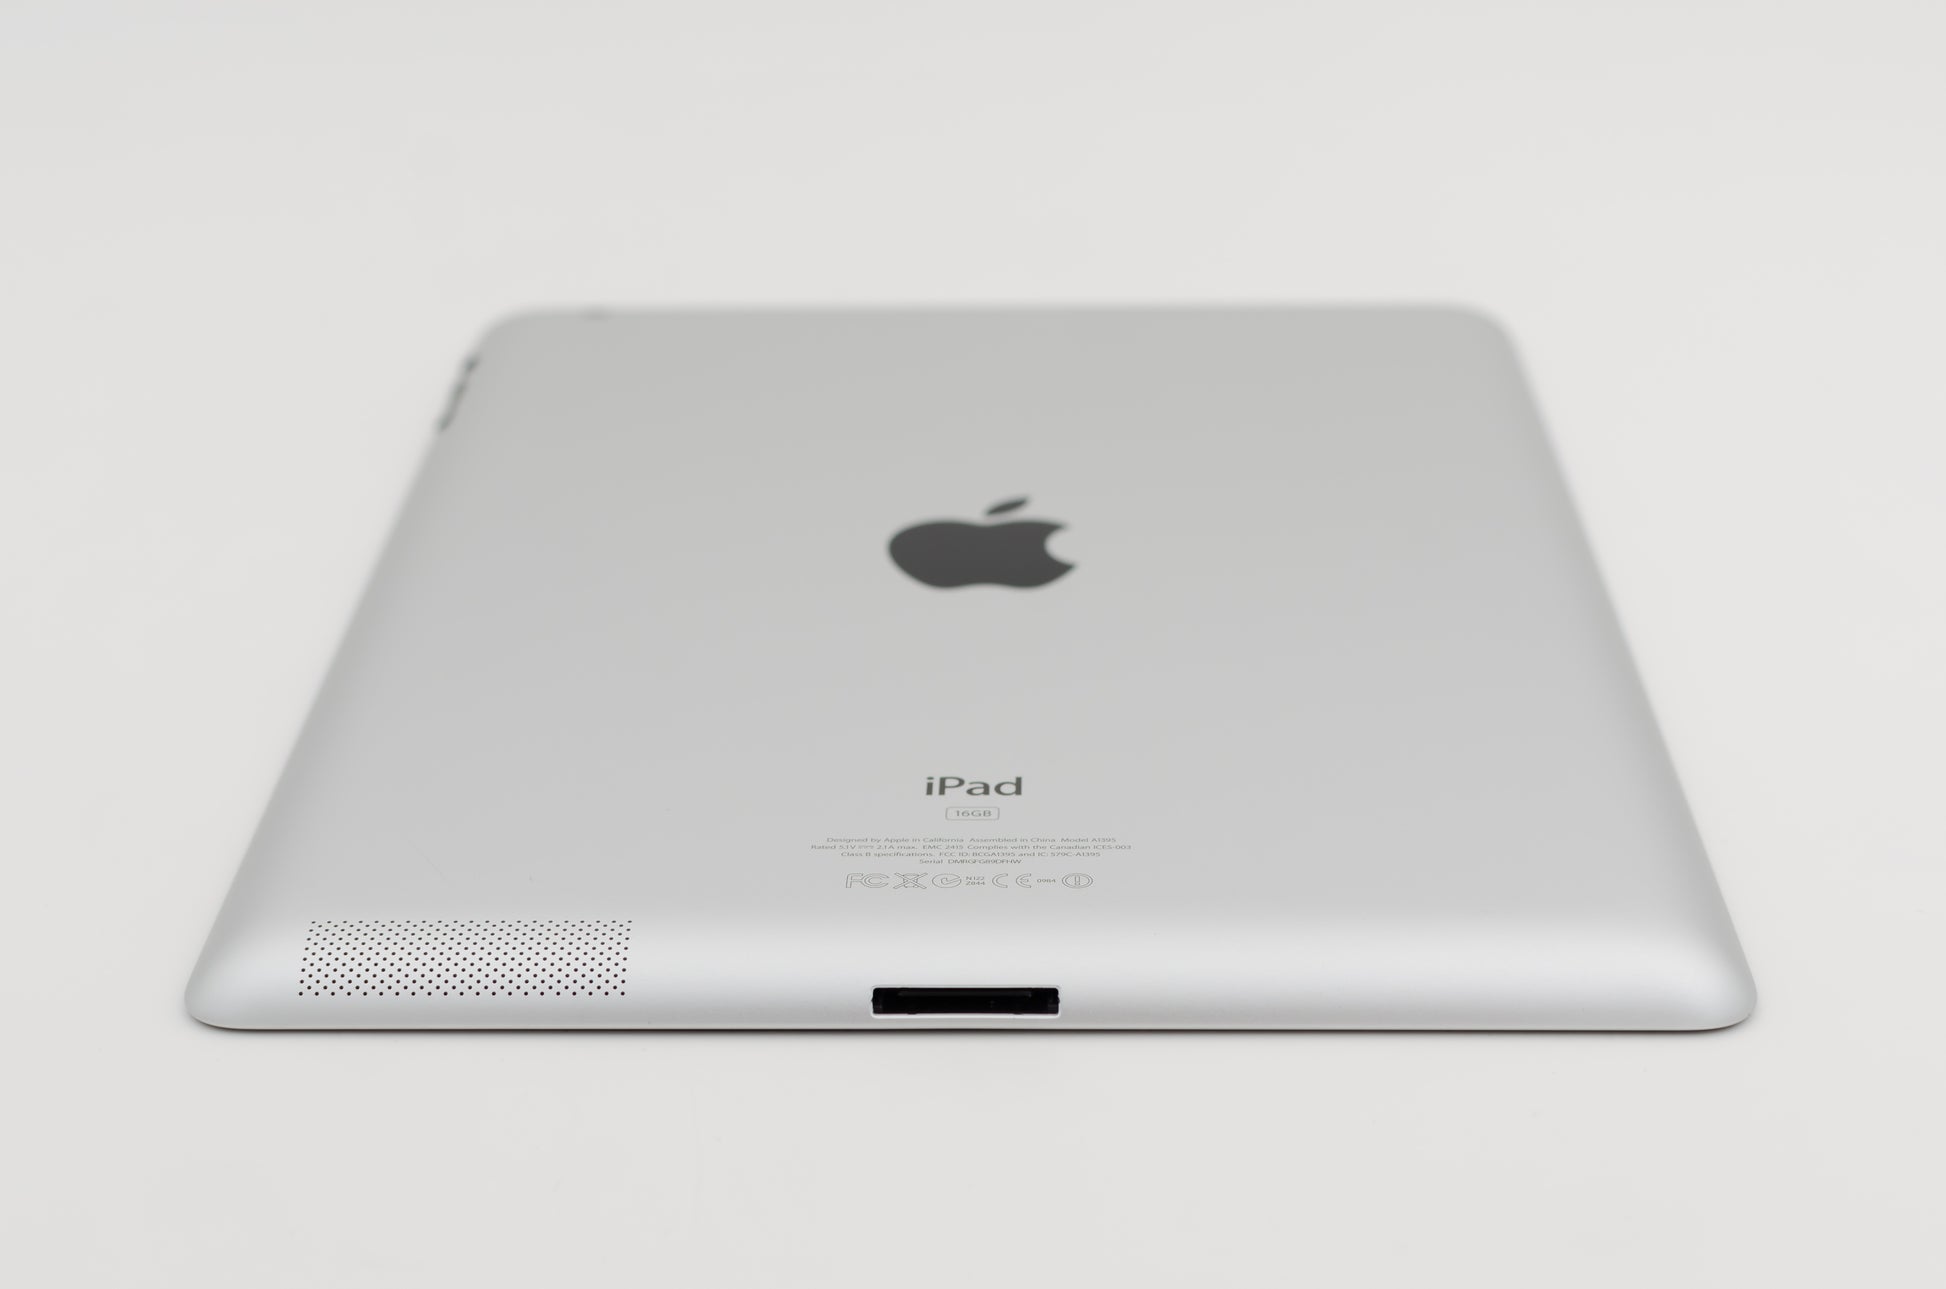 apple-2012-9.7-inch-ipad-2-a1397-silver/black-4